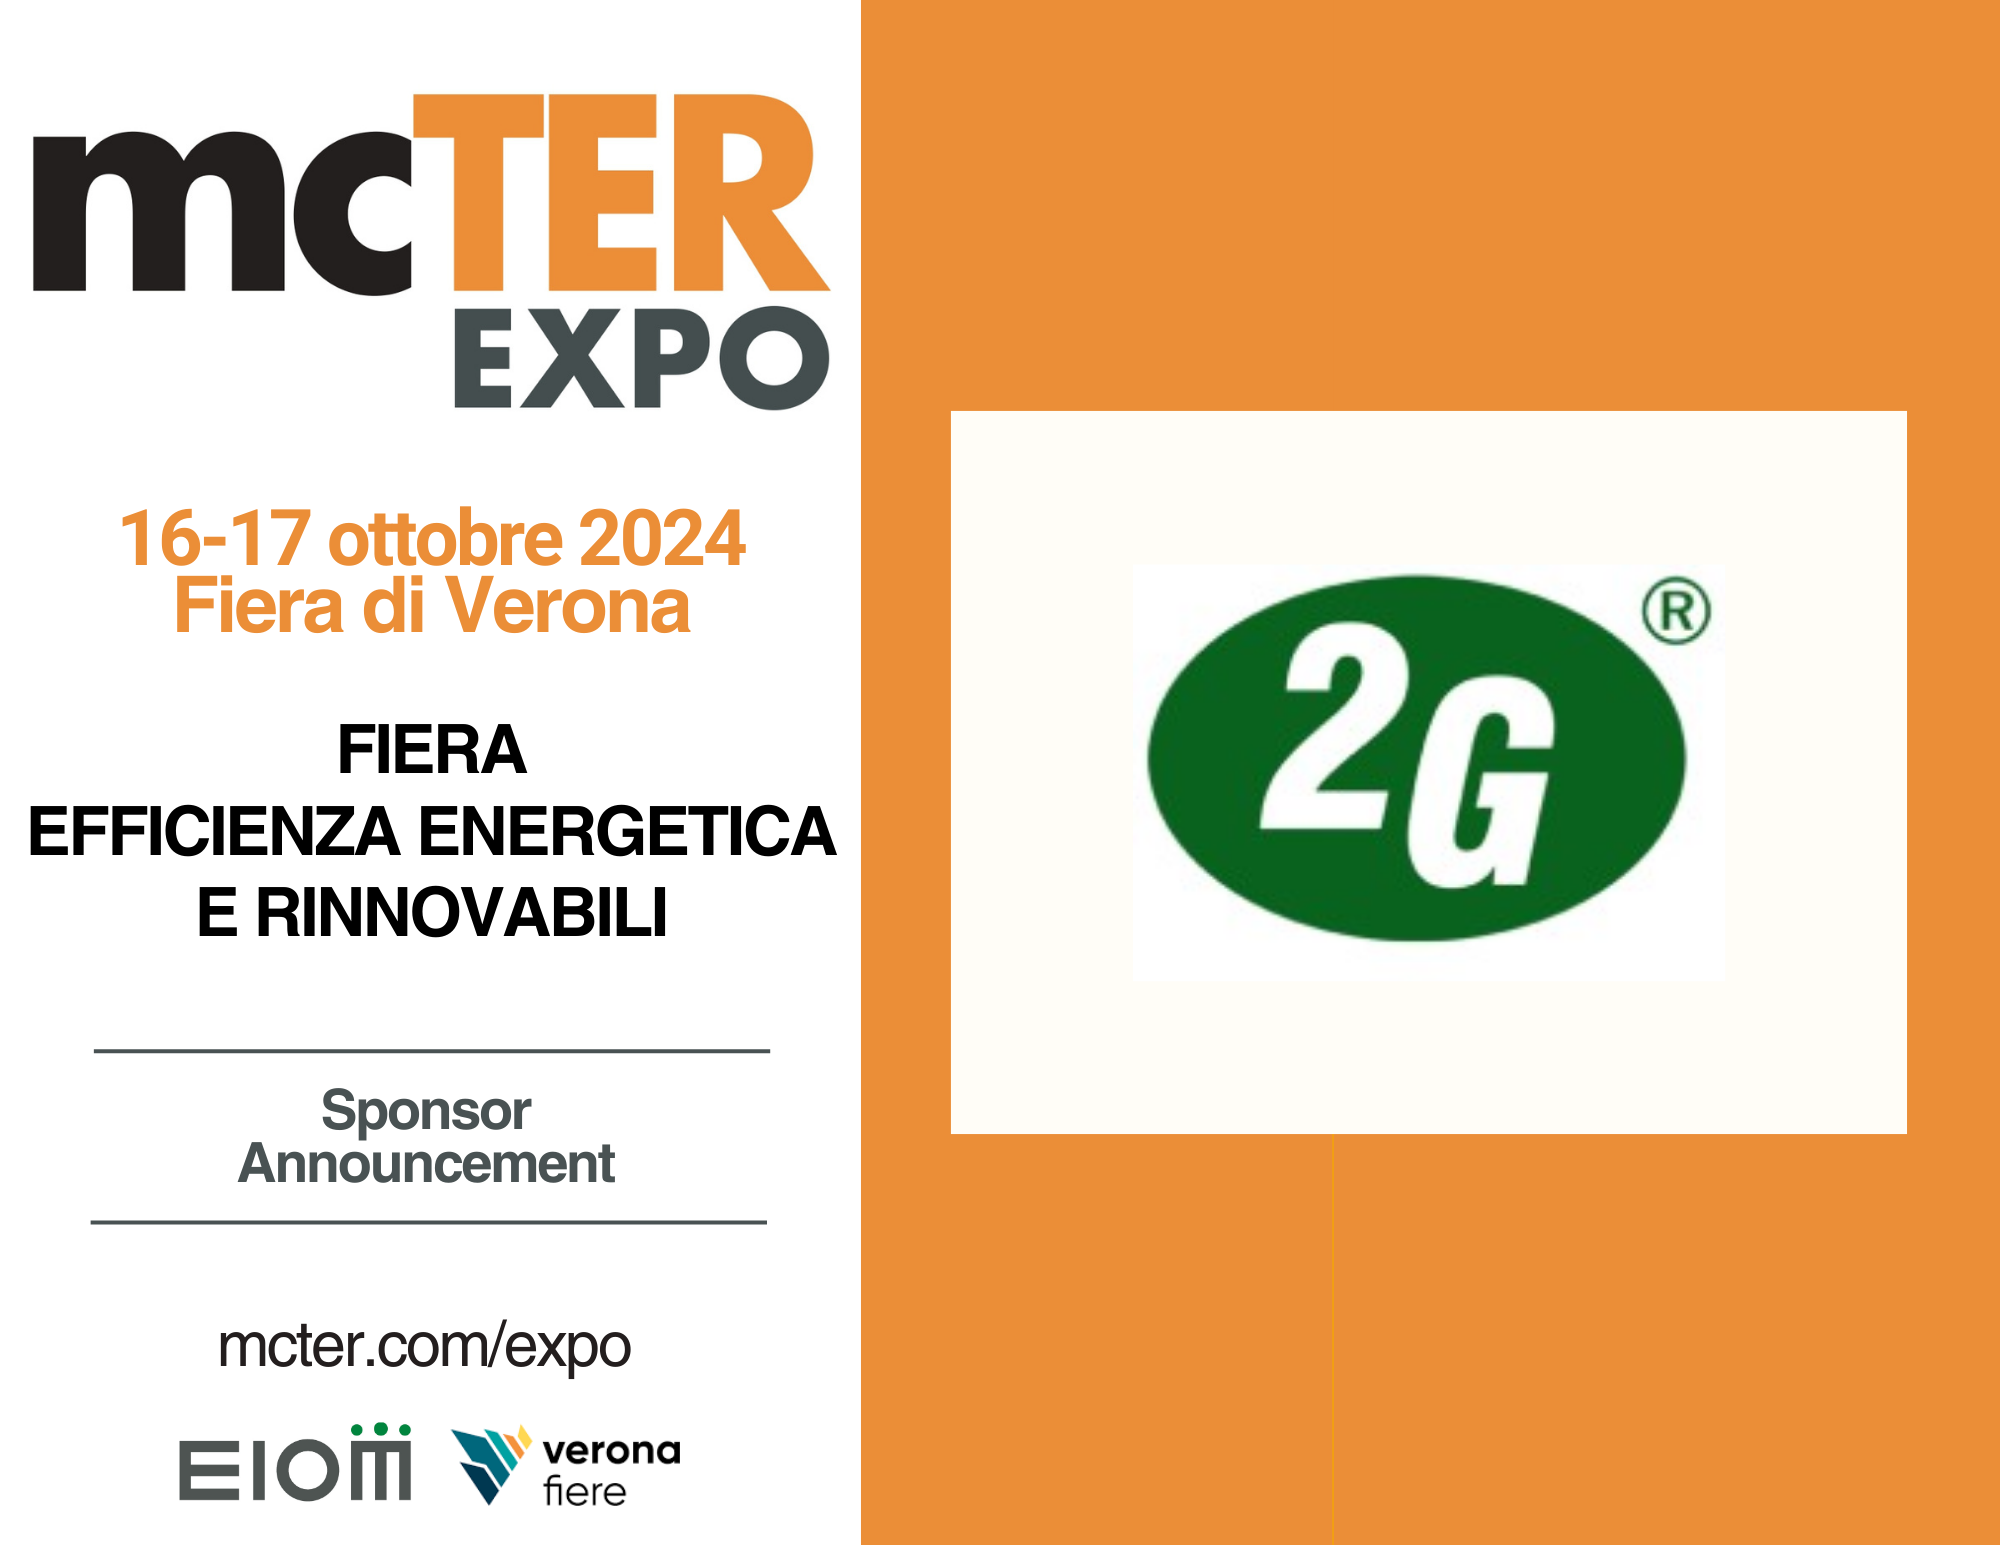 Anche 2G Italia a mcTER EXPO, la Fiera dell’Efficienza Energetica e delle Rinnovabili a Veronafiere il 16 - 17 ottobre 2024
